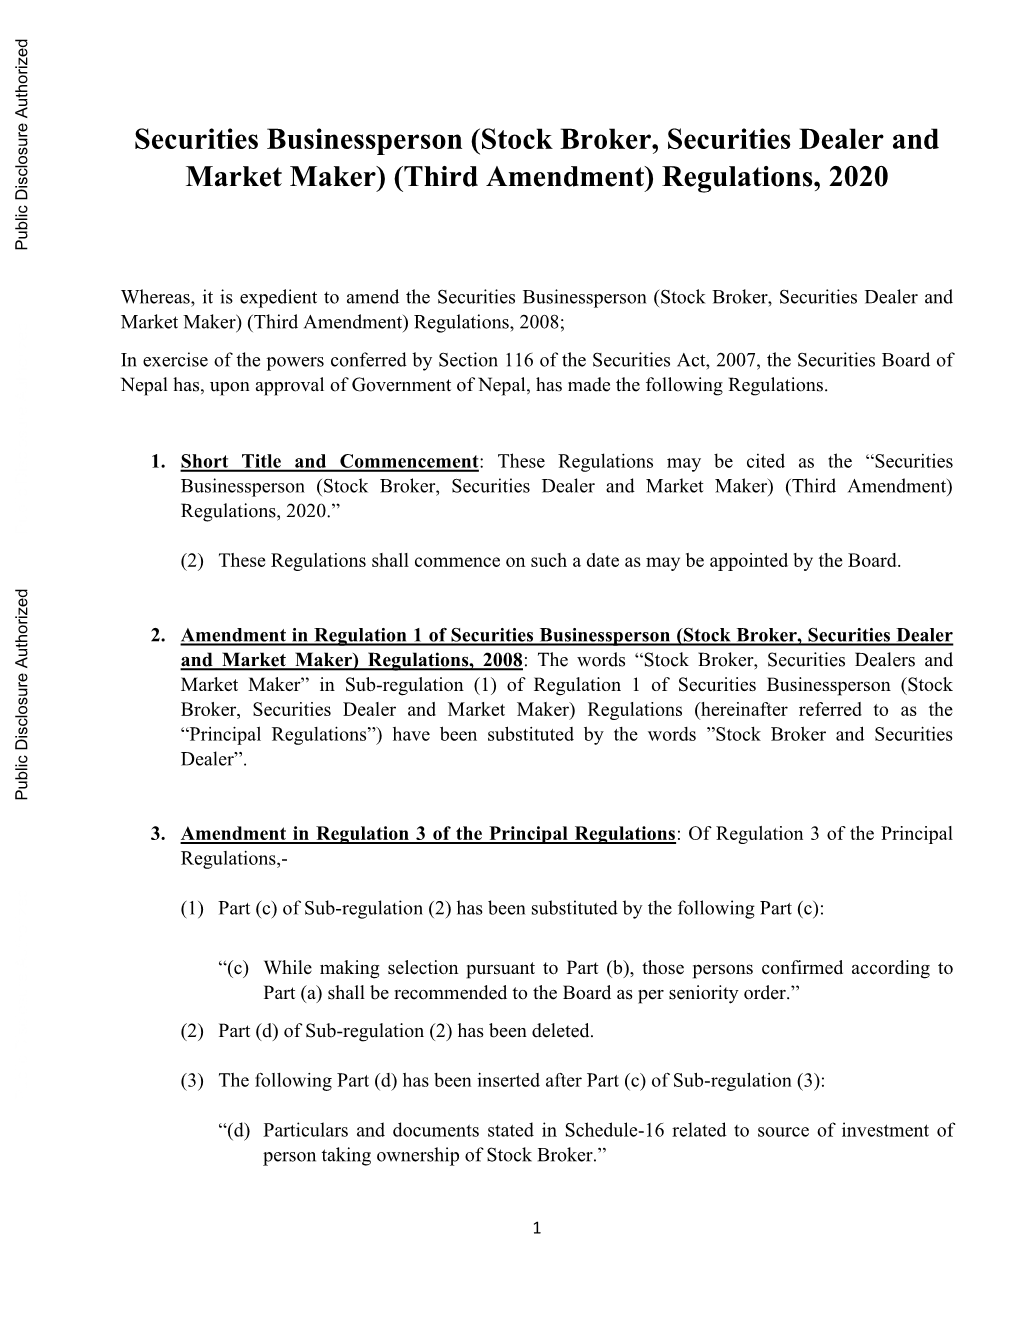 Securities Businessperson (Stock Broker, Securities Dealer and Market Maker) (Third Amendment) Regulations, 2020